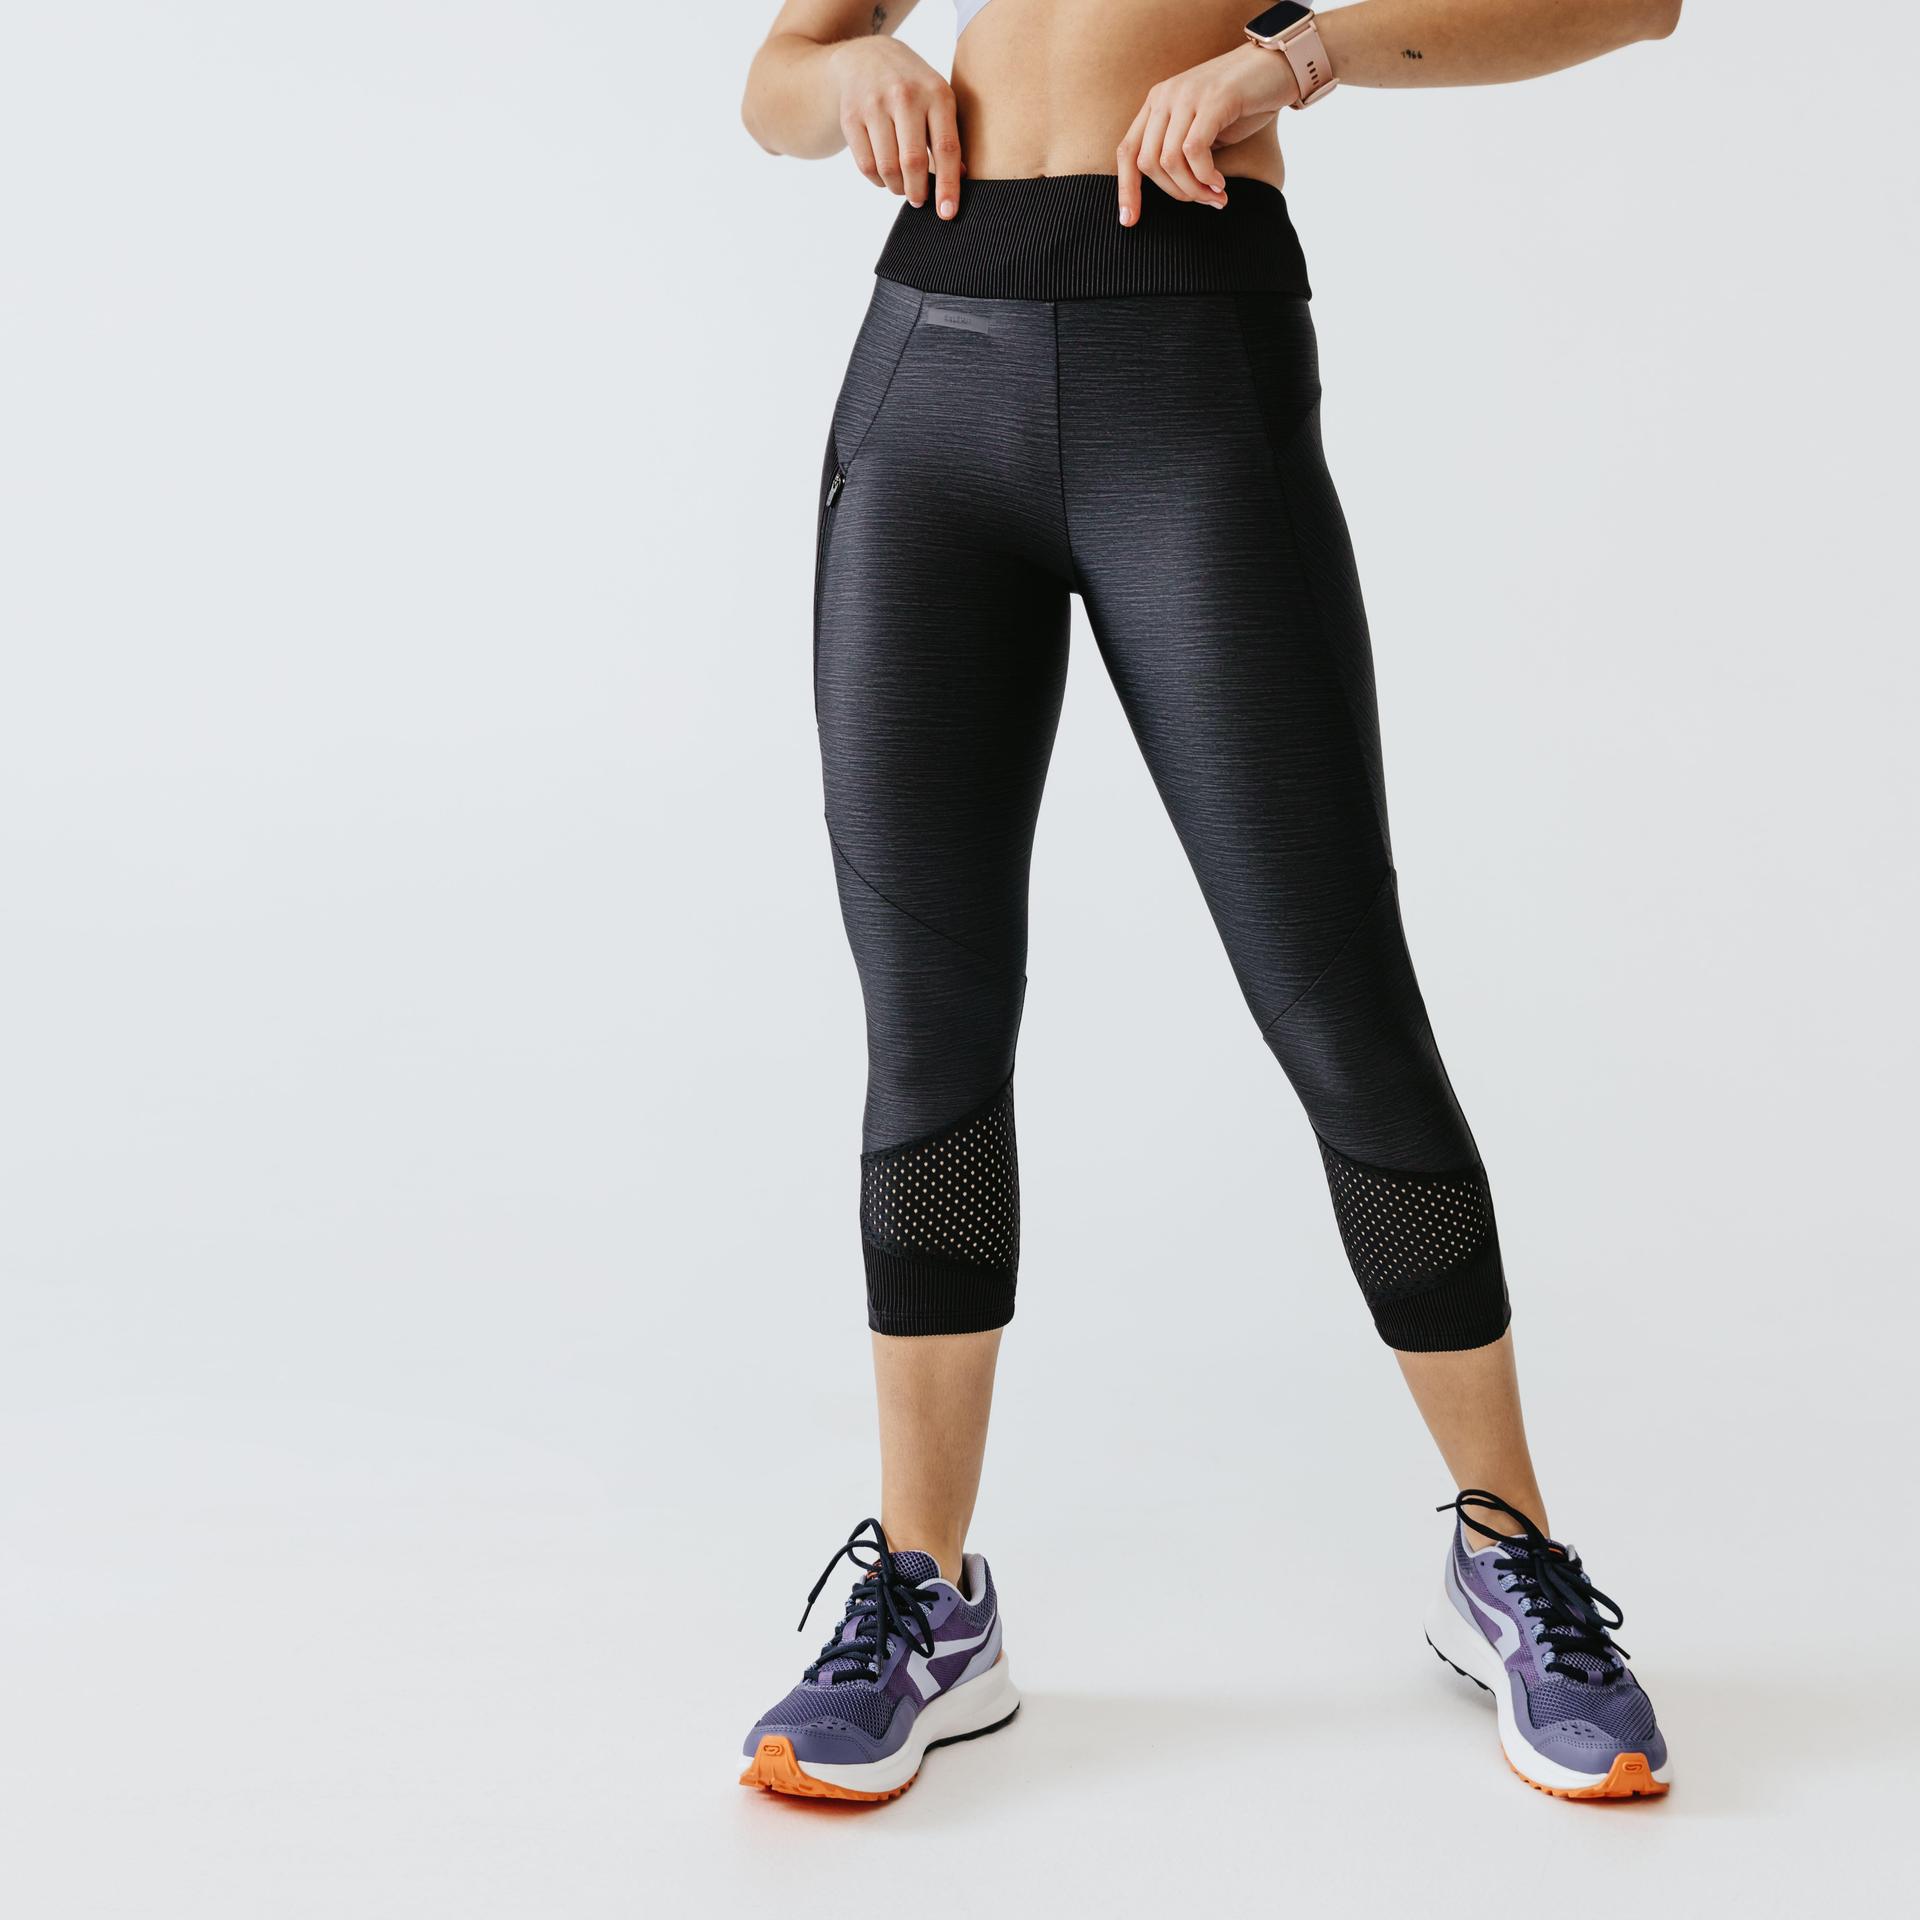 women's-breathable-short-running-leggings-dry+-feel---black